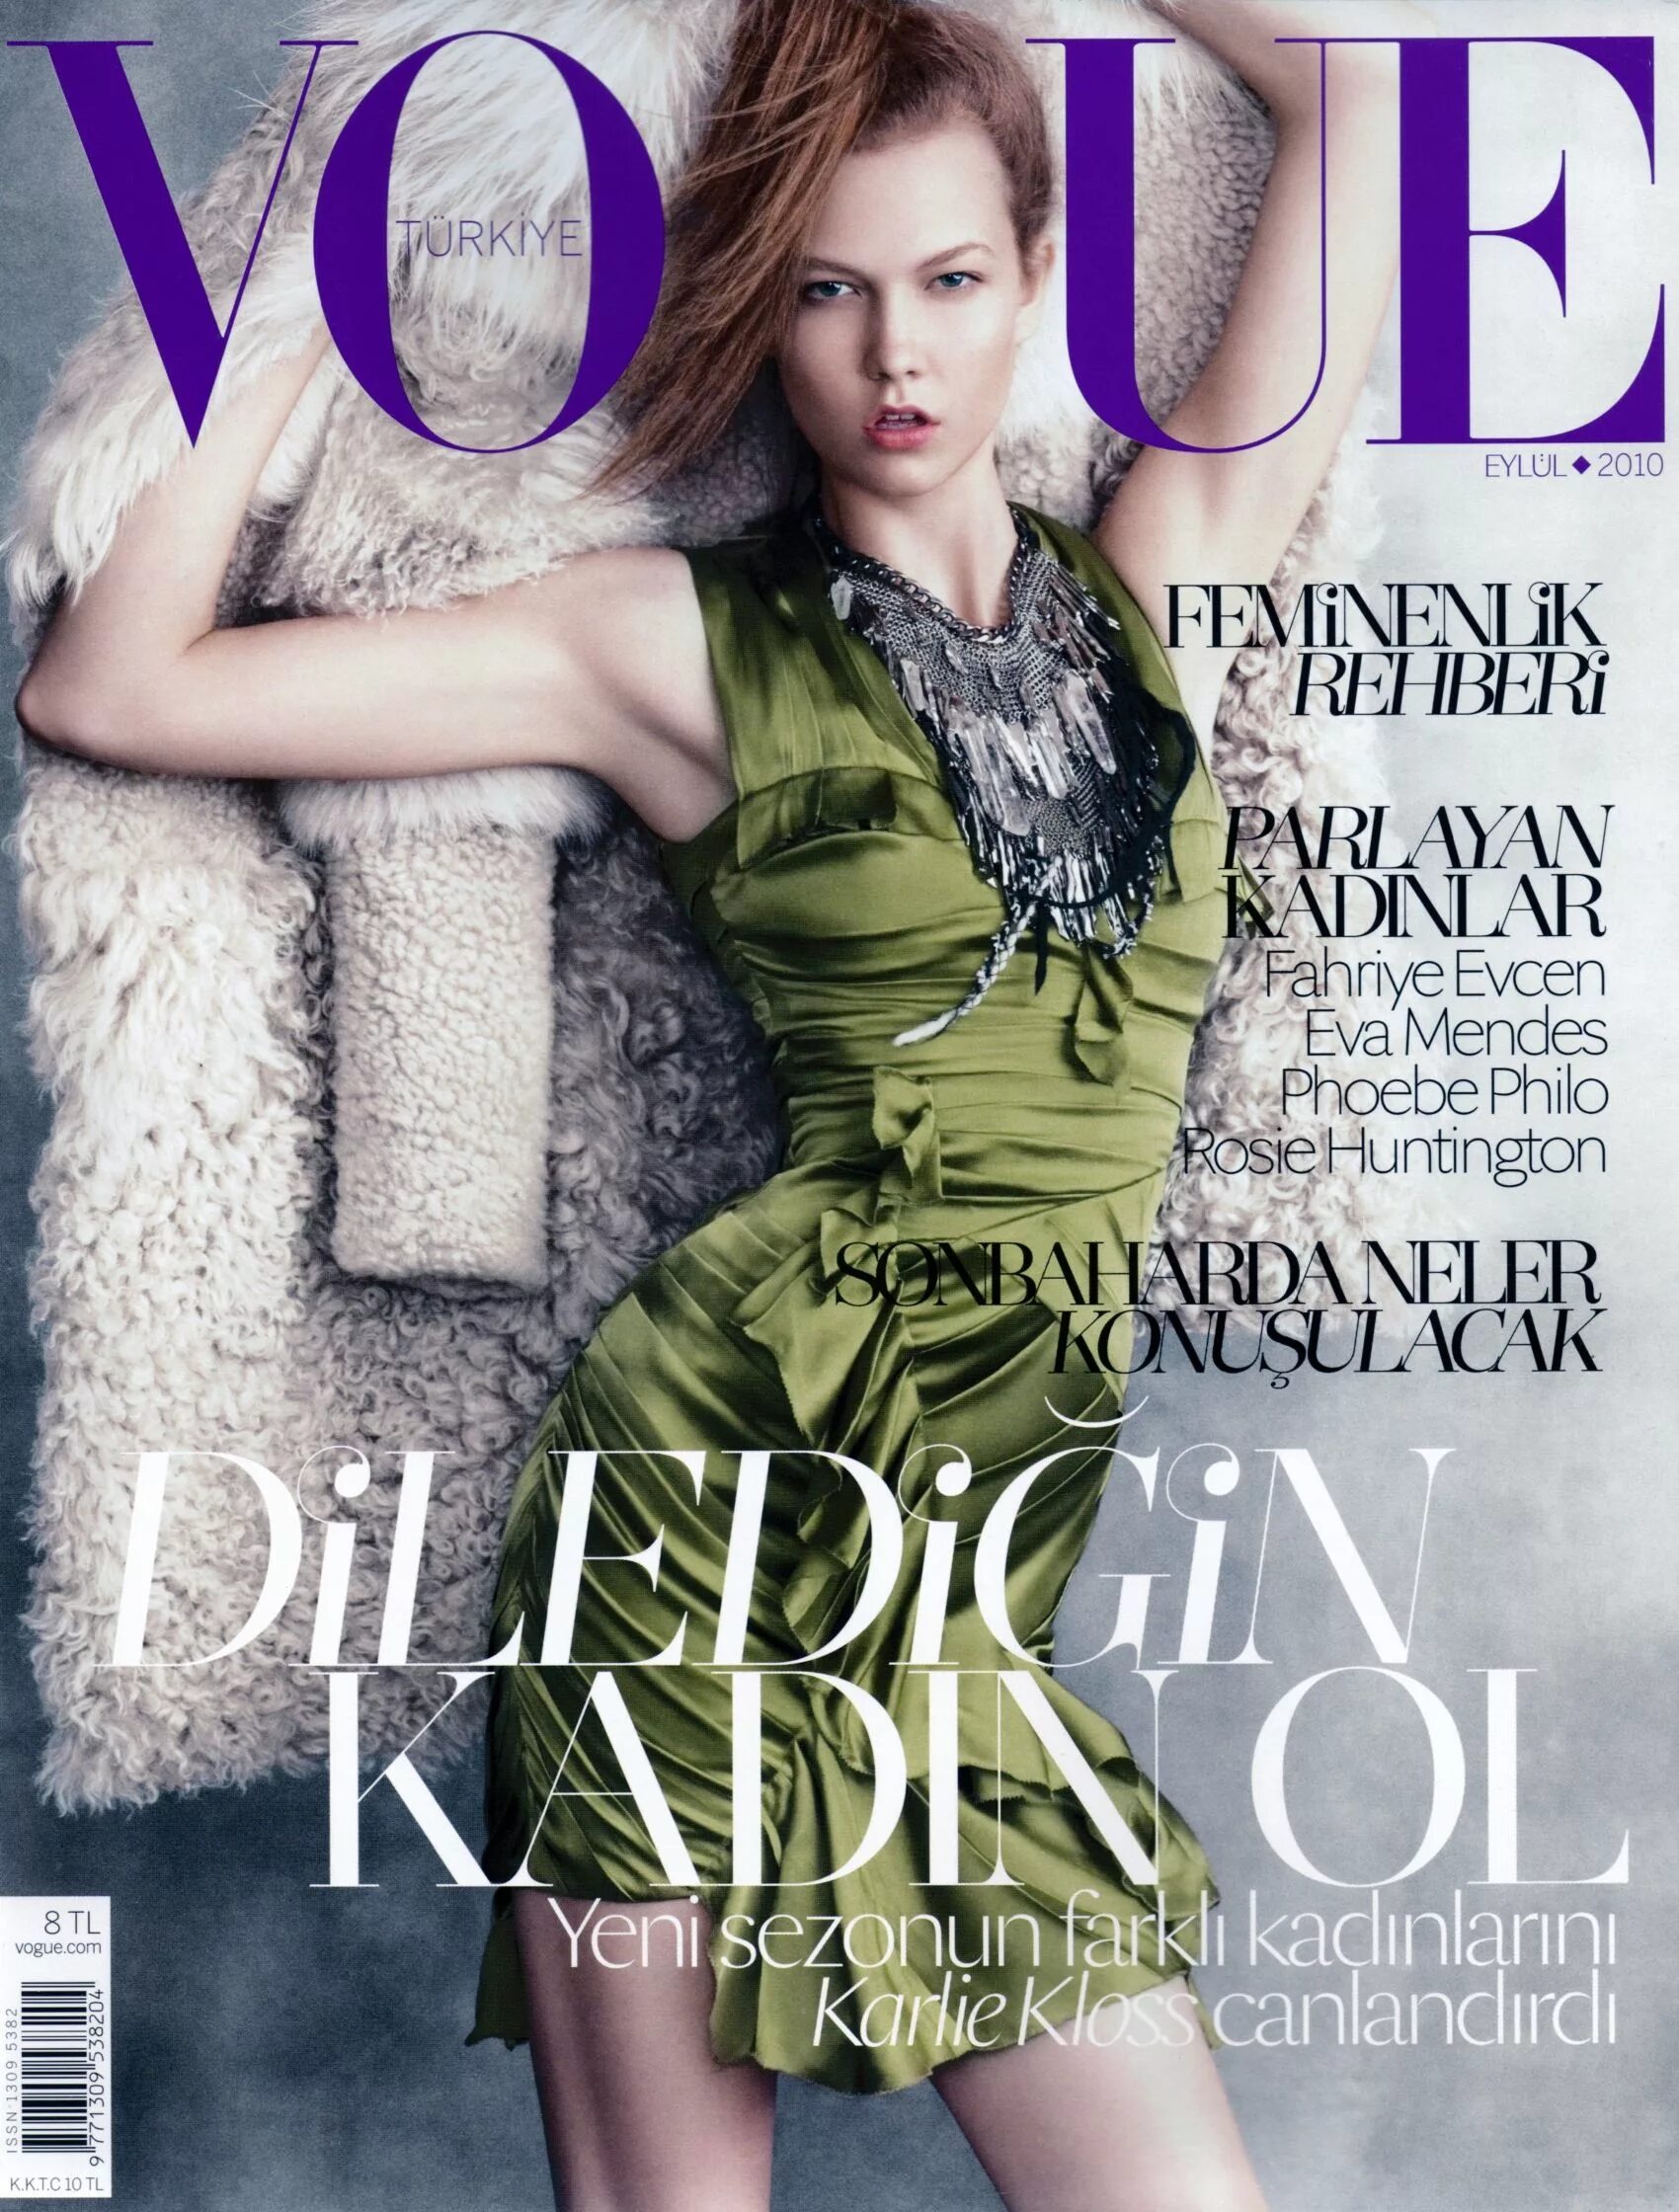 Обложки журналов моды. Карли Клосс на обложке Vogue. Карли Клосс обложки журнала. Карли Клосс обложка Вог.